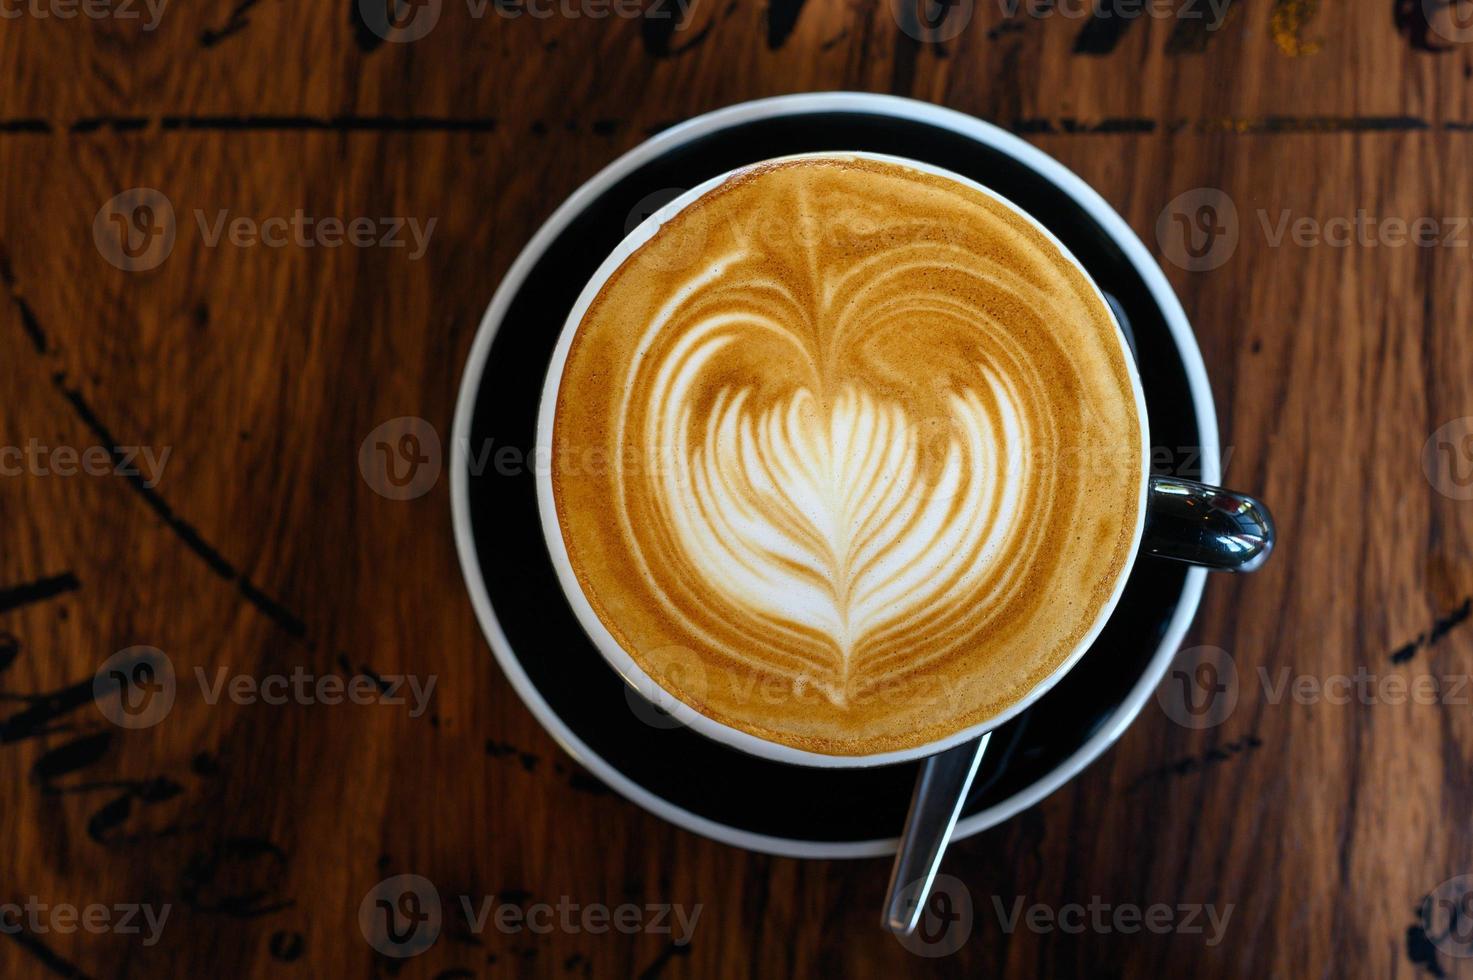 café latte art foto